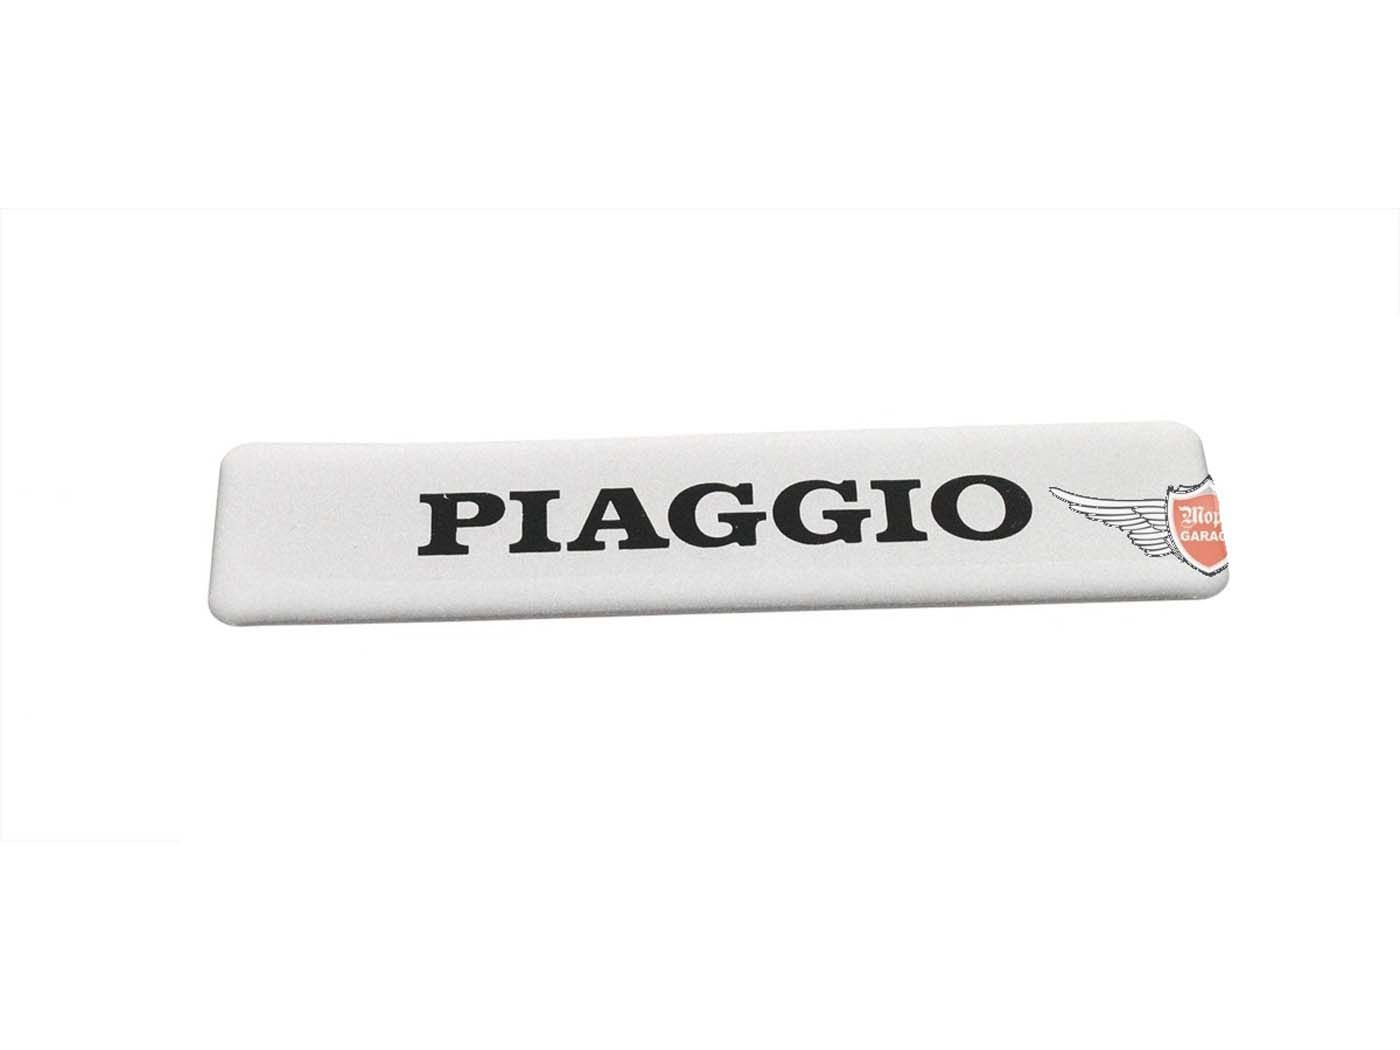 Rubber Sticker For Piaggio Ciao, Bravo, Si, Grillo, Mix